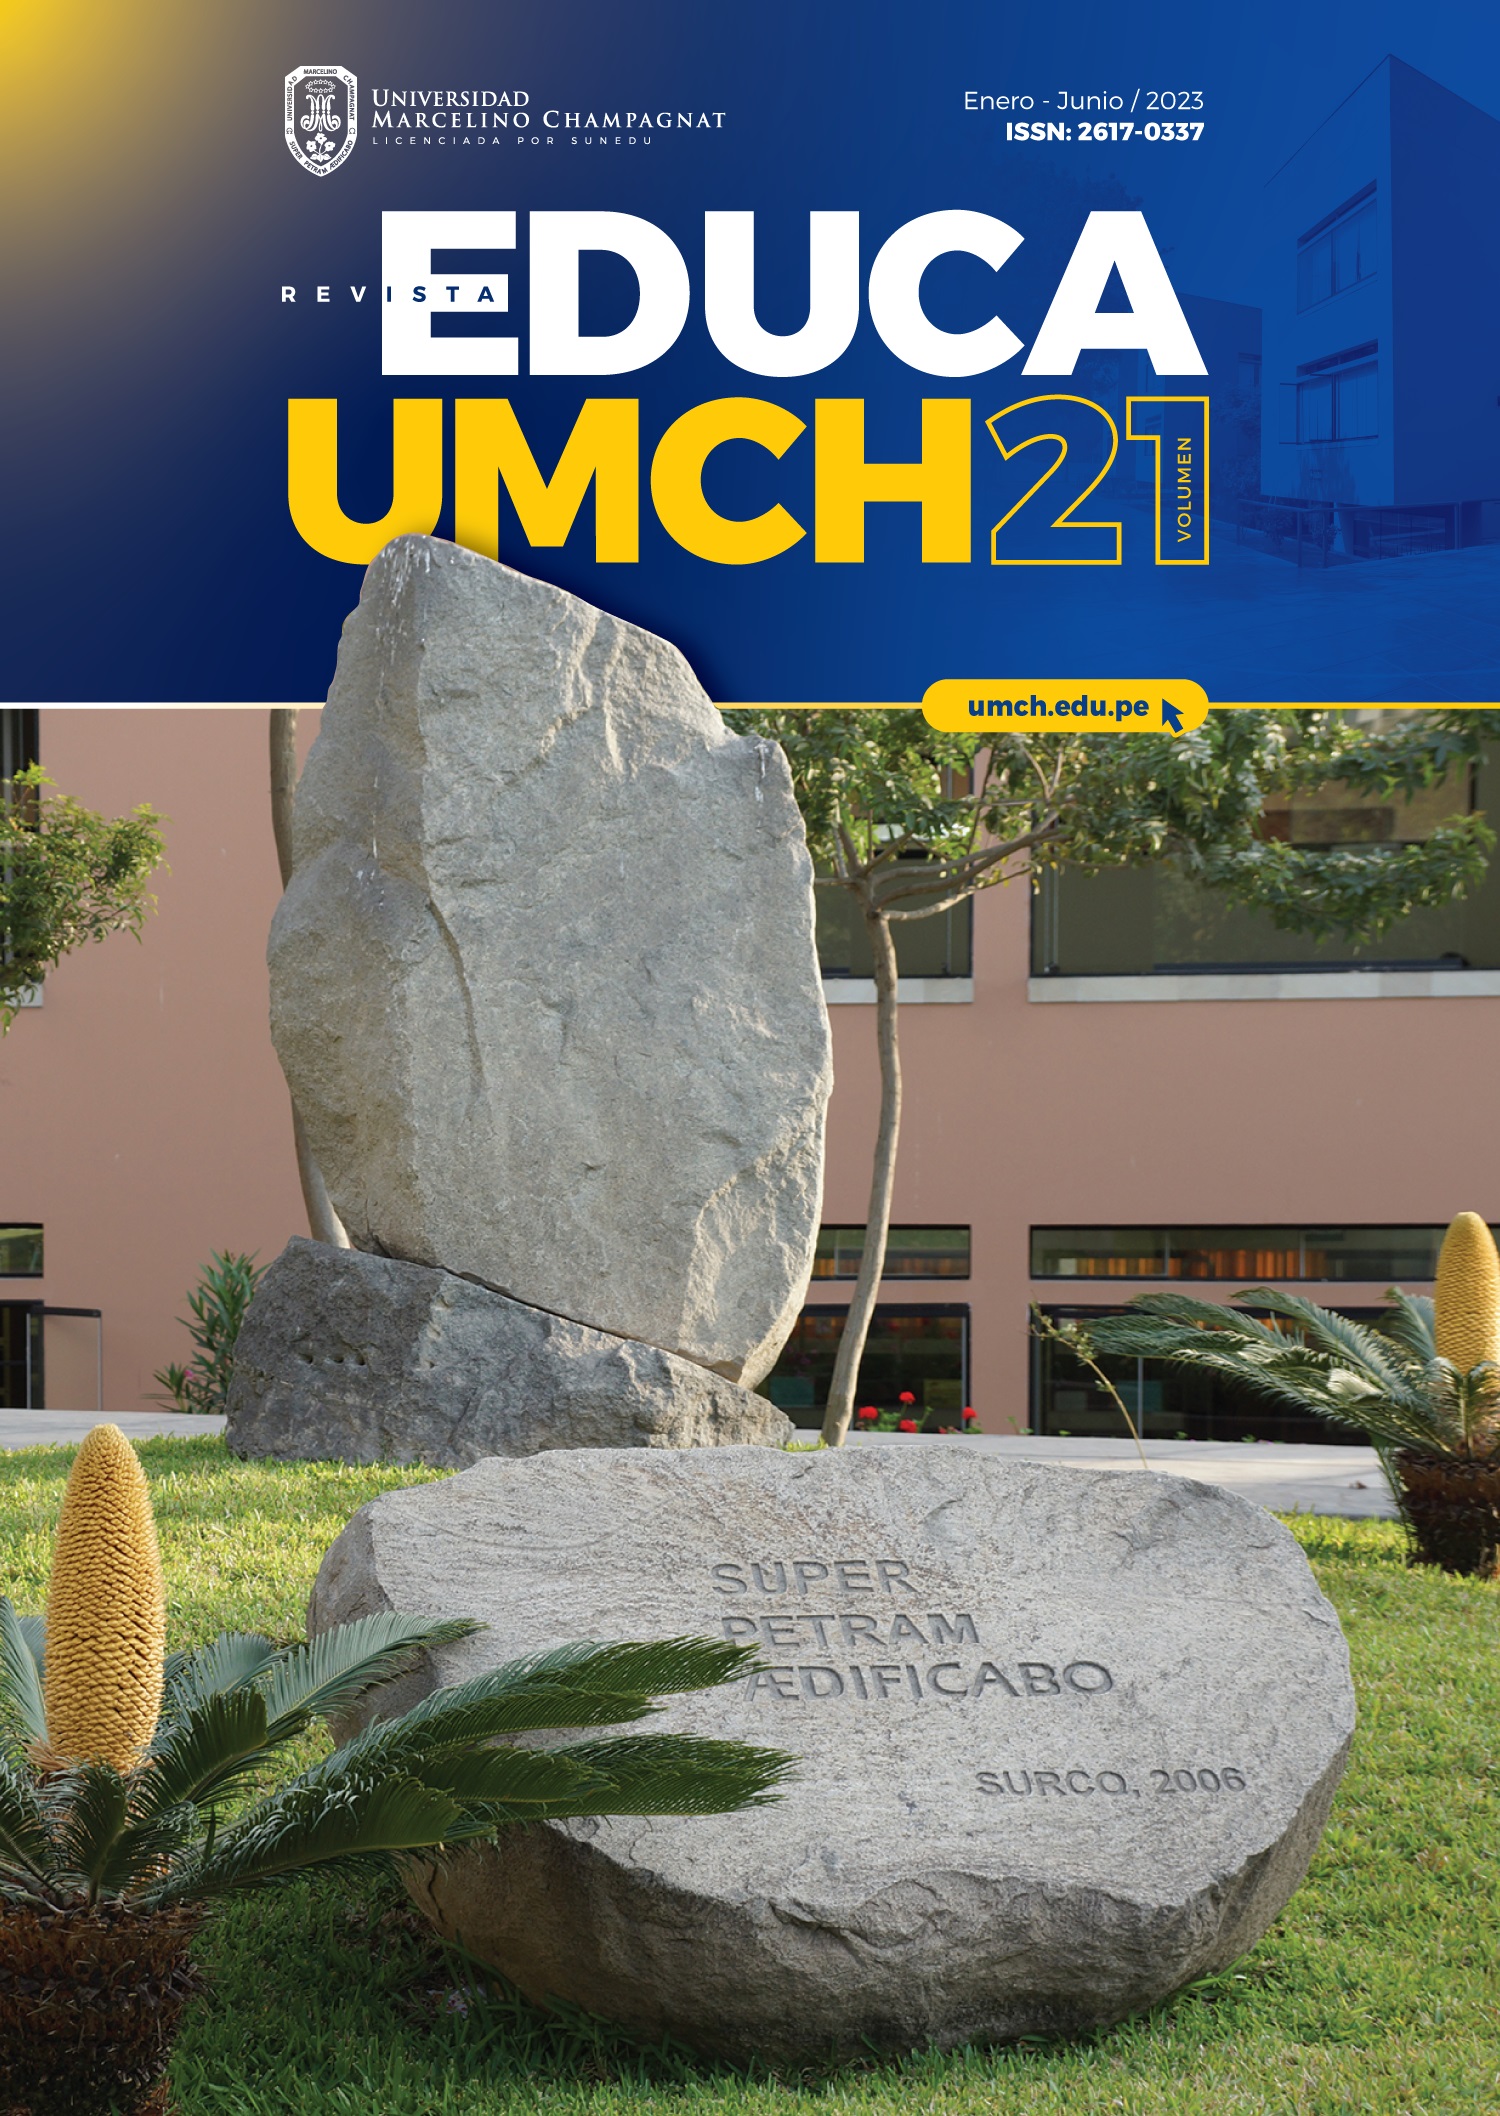 					Ver Núm. 21 (2023): Revista Educa - UMCH N°21 2023 (enero-junio)
				